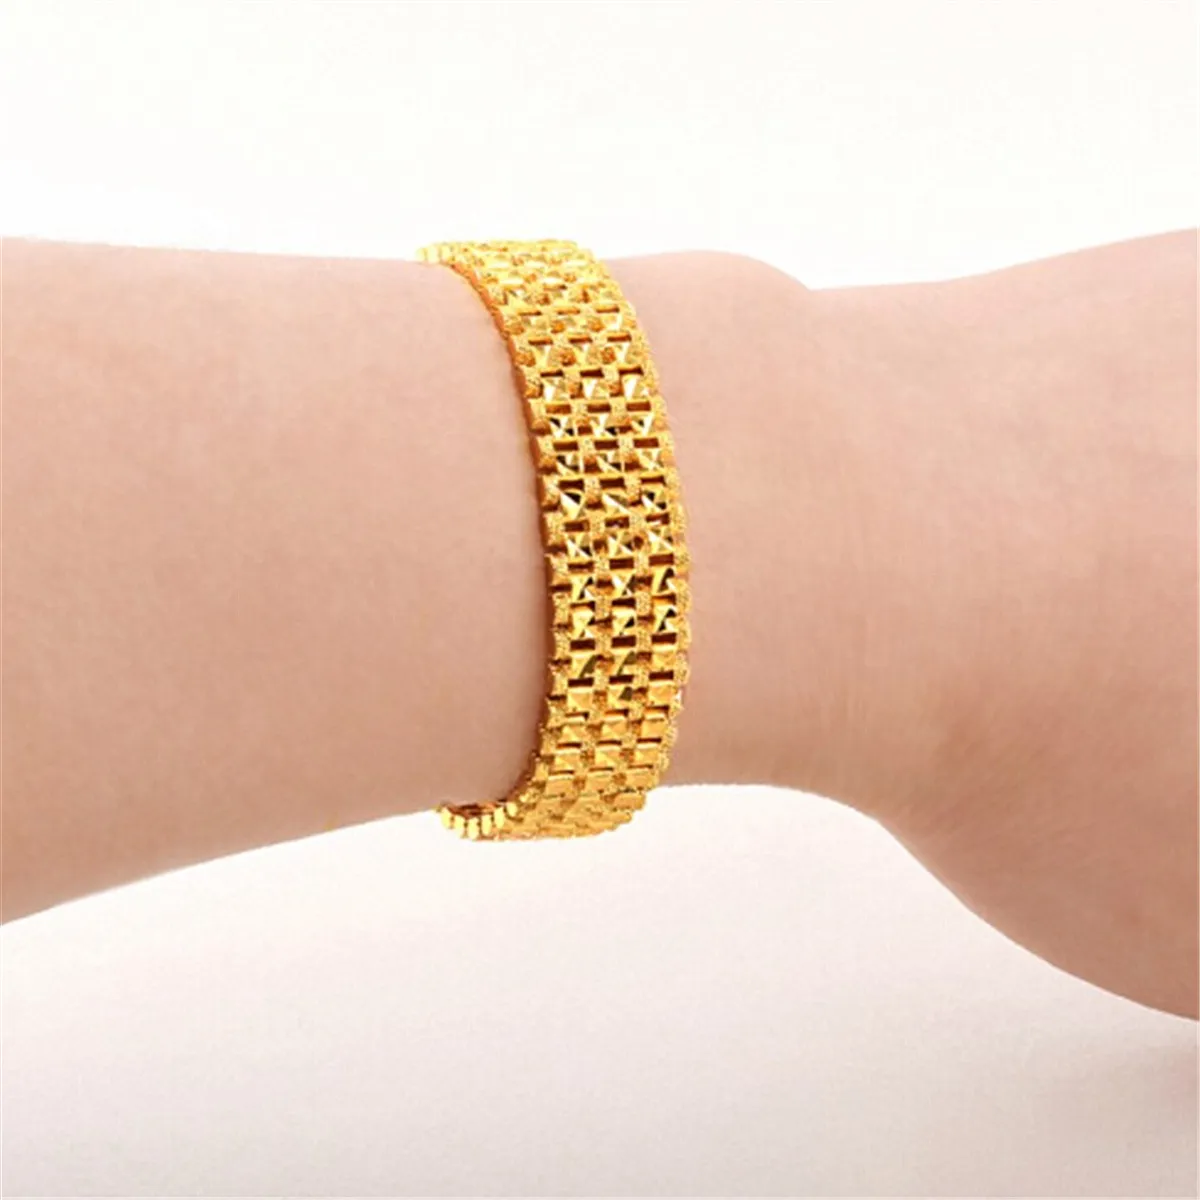 Men Gold Bracelet On Hand Stock Photo 1549993475 | Shutterstock